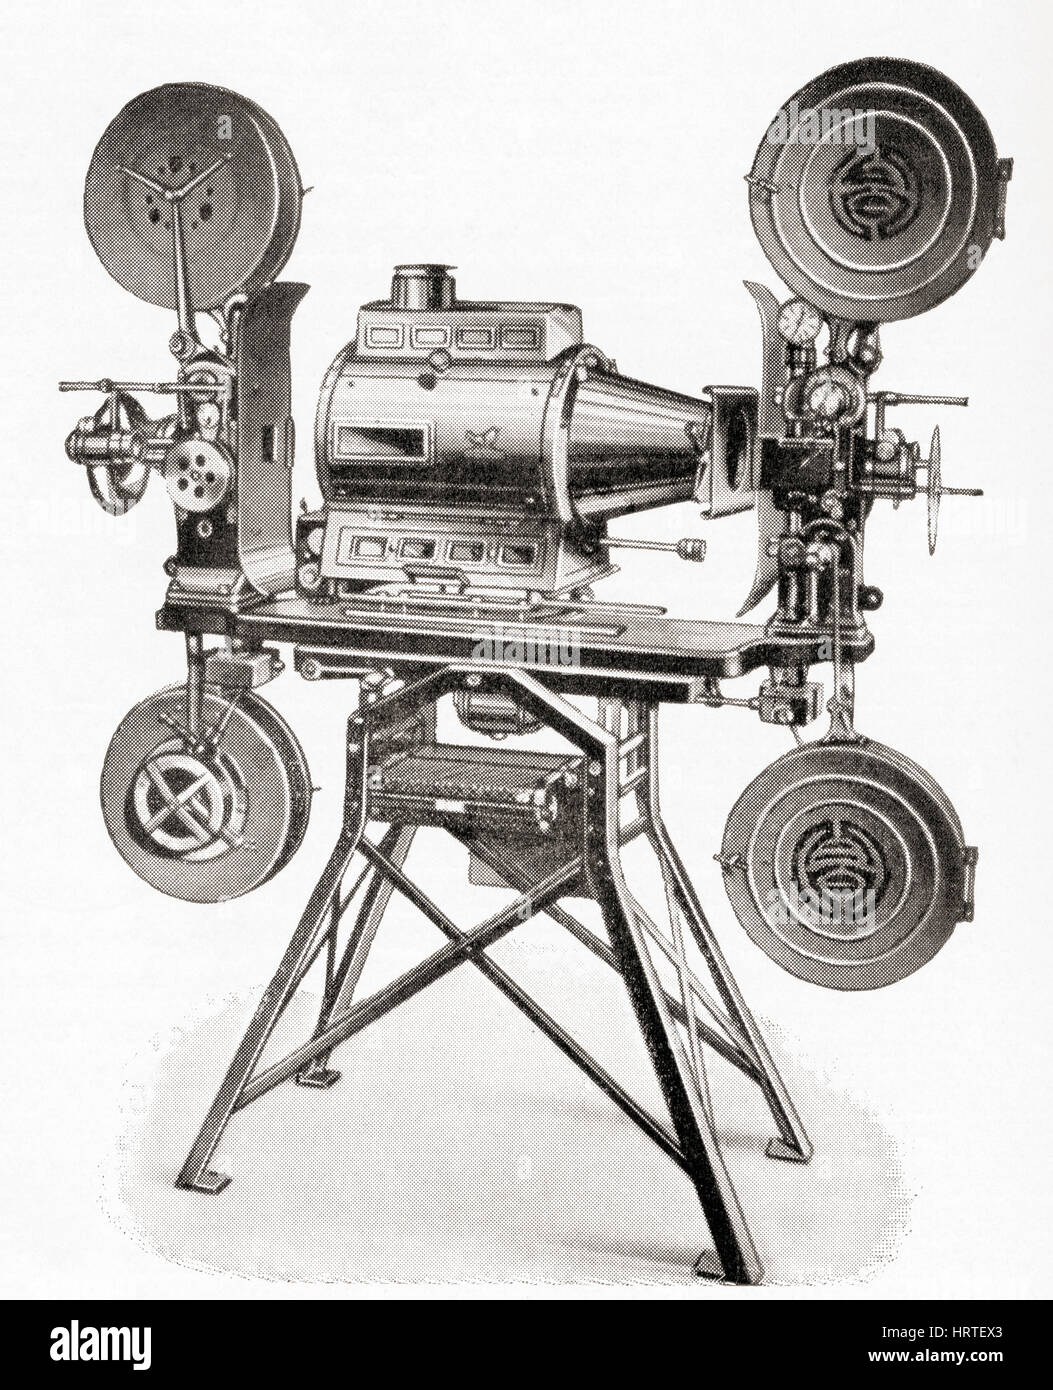 Un film de projection double Goerz Hahn appareil photo. De Meyers lexique, publié 1927. Banque D'Images